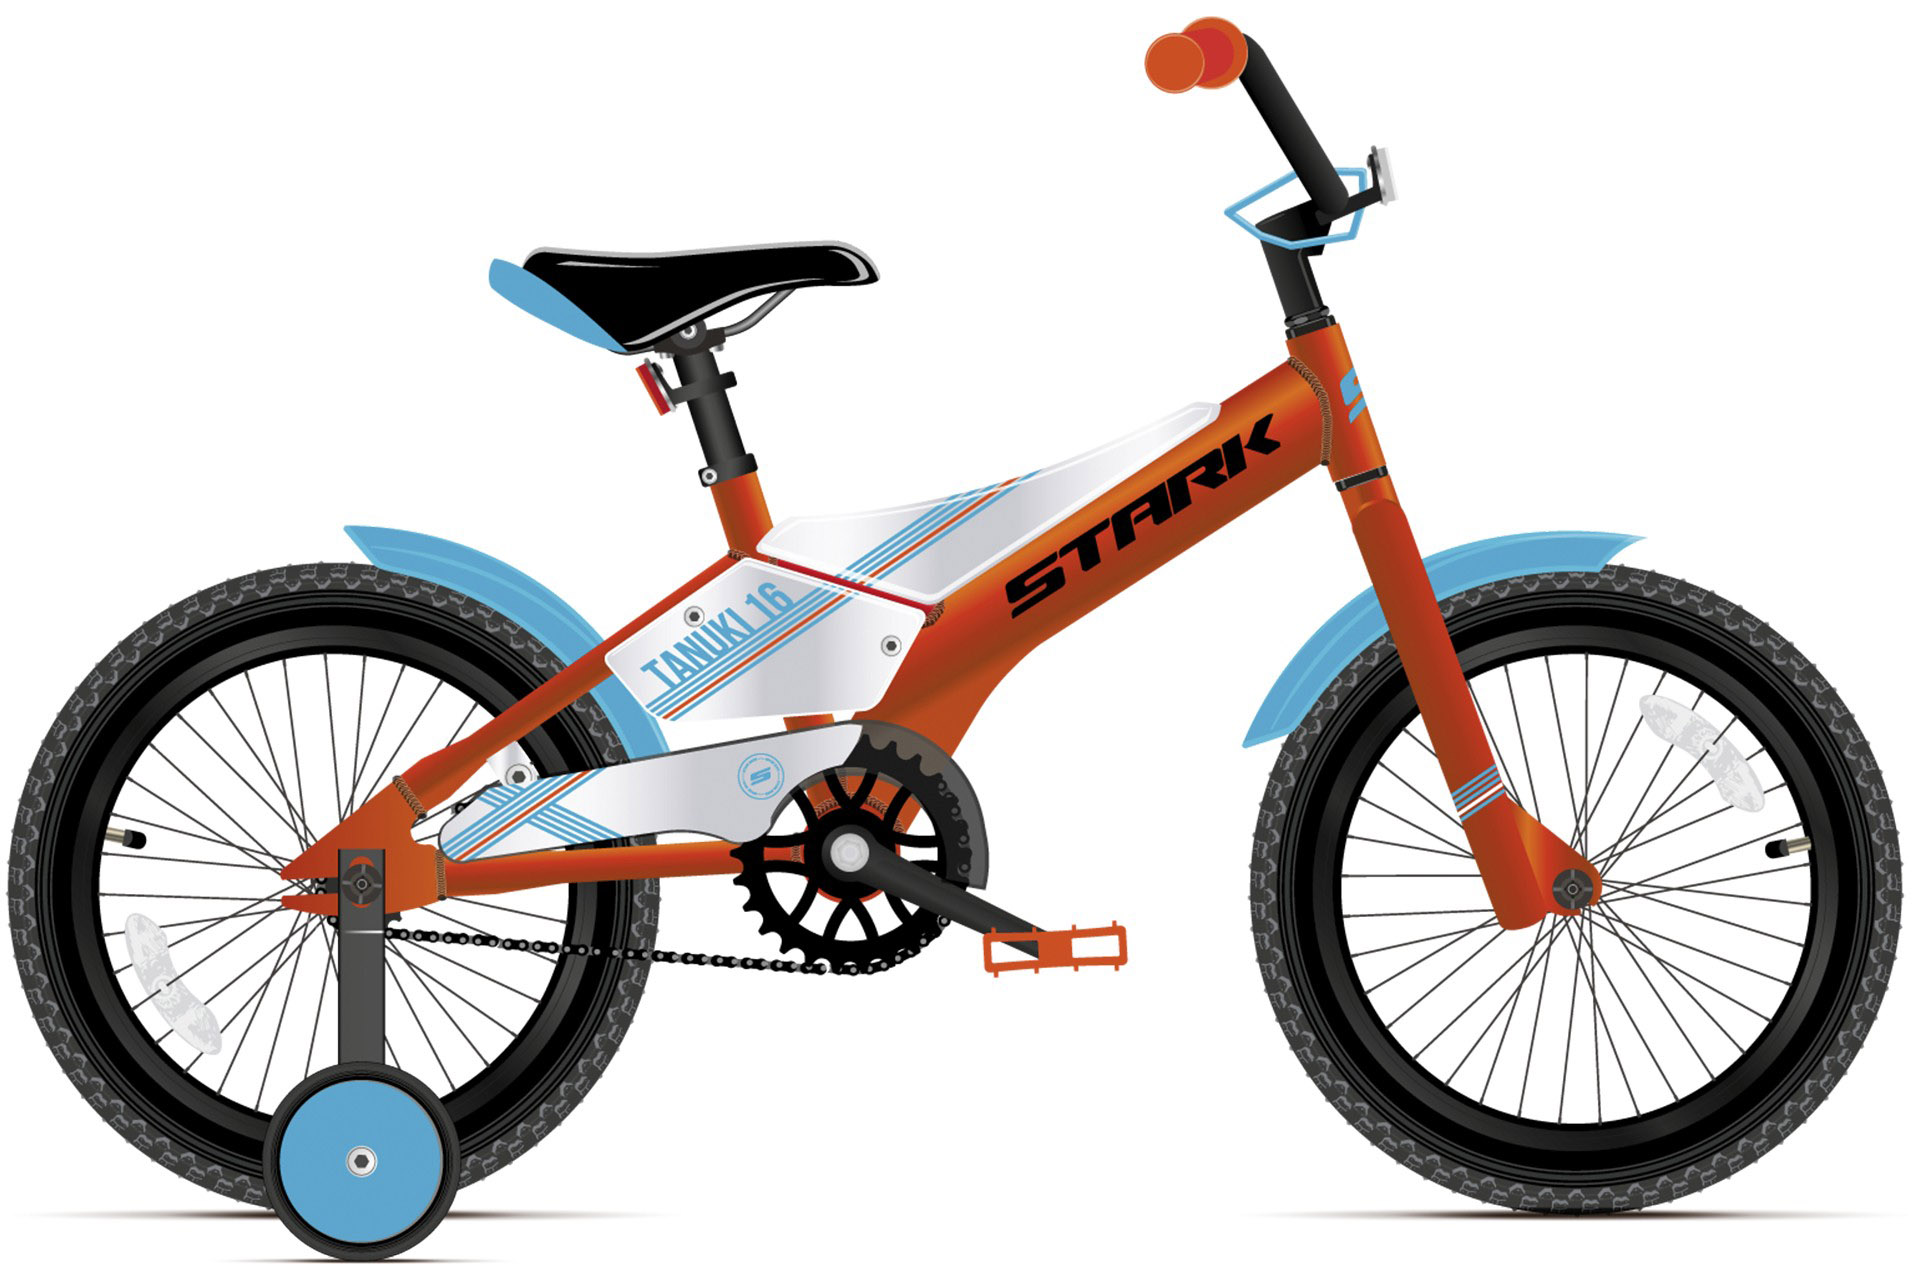  Отзывы о Детском велосипеде Stark Tanuki 16 Boy (2021 2021